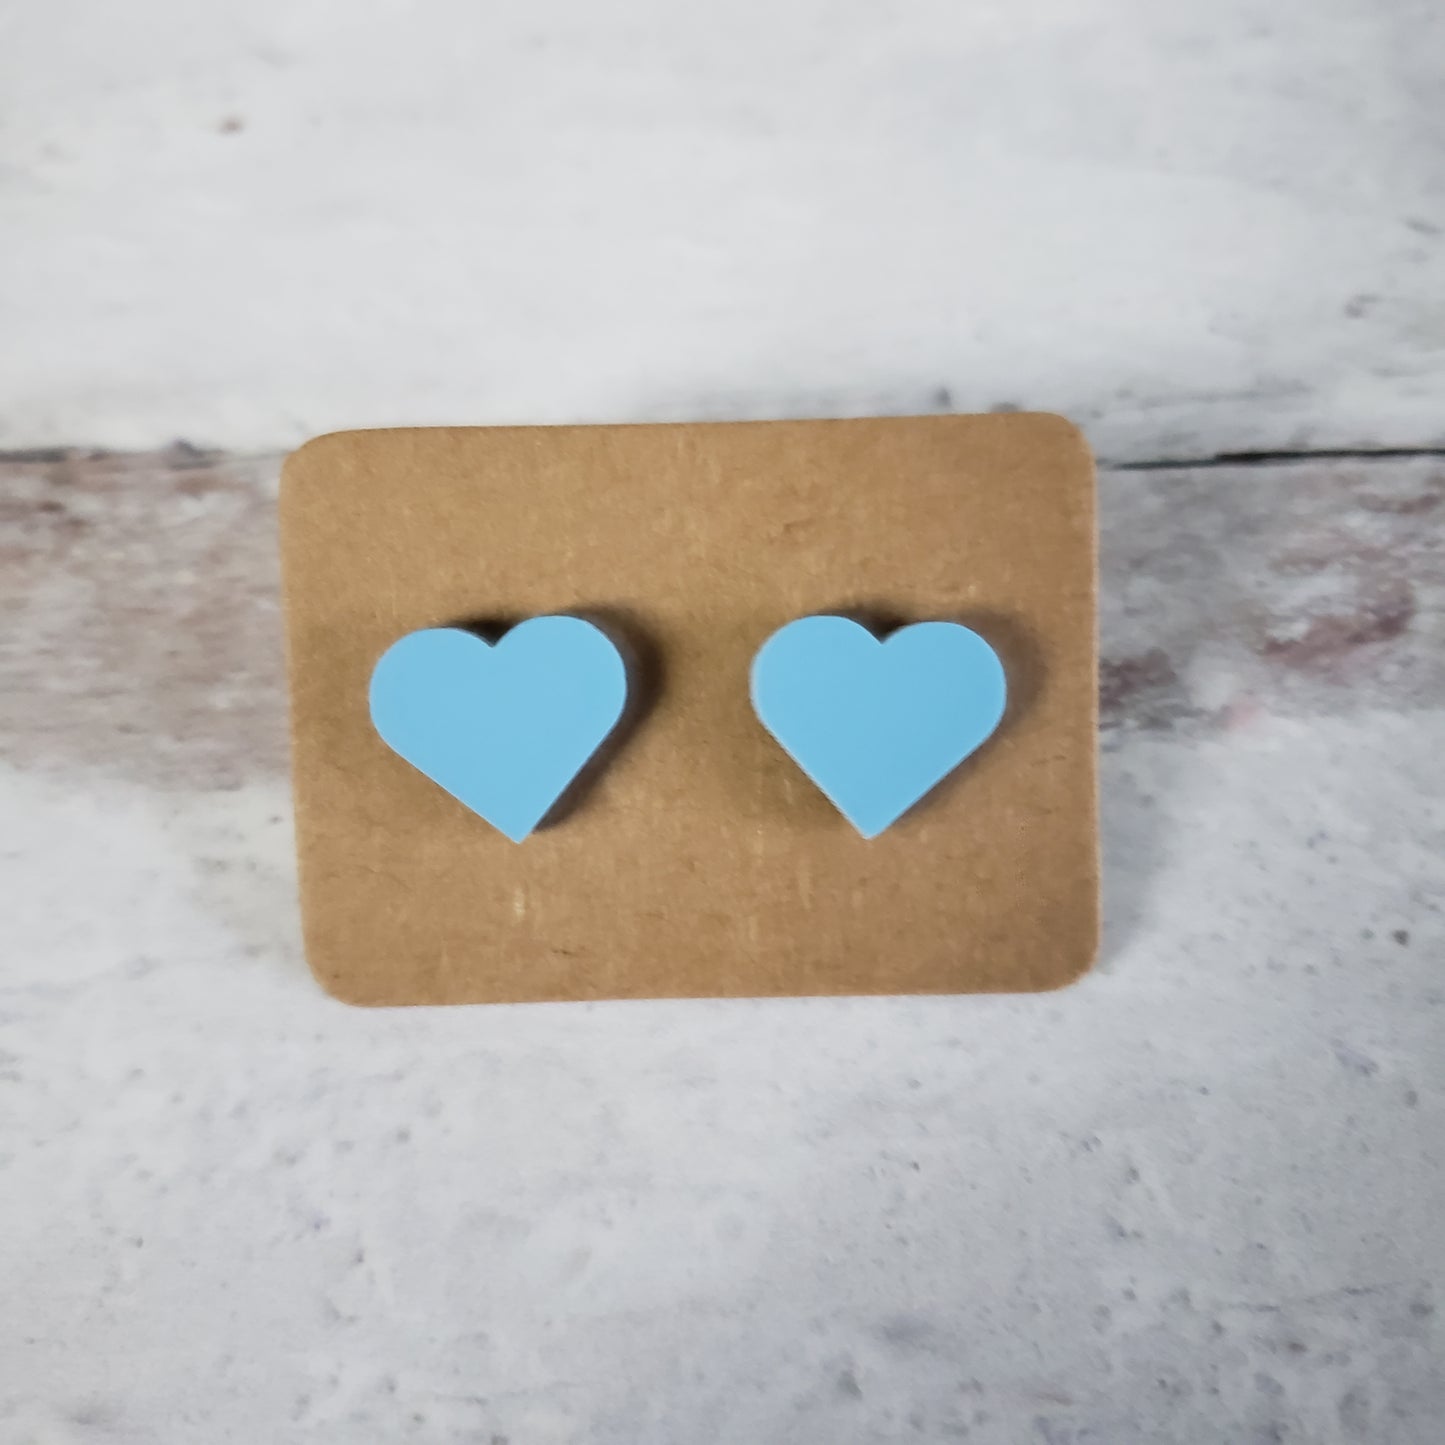 Matte pastel blue heart shaped stud earrings.